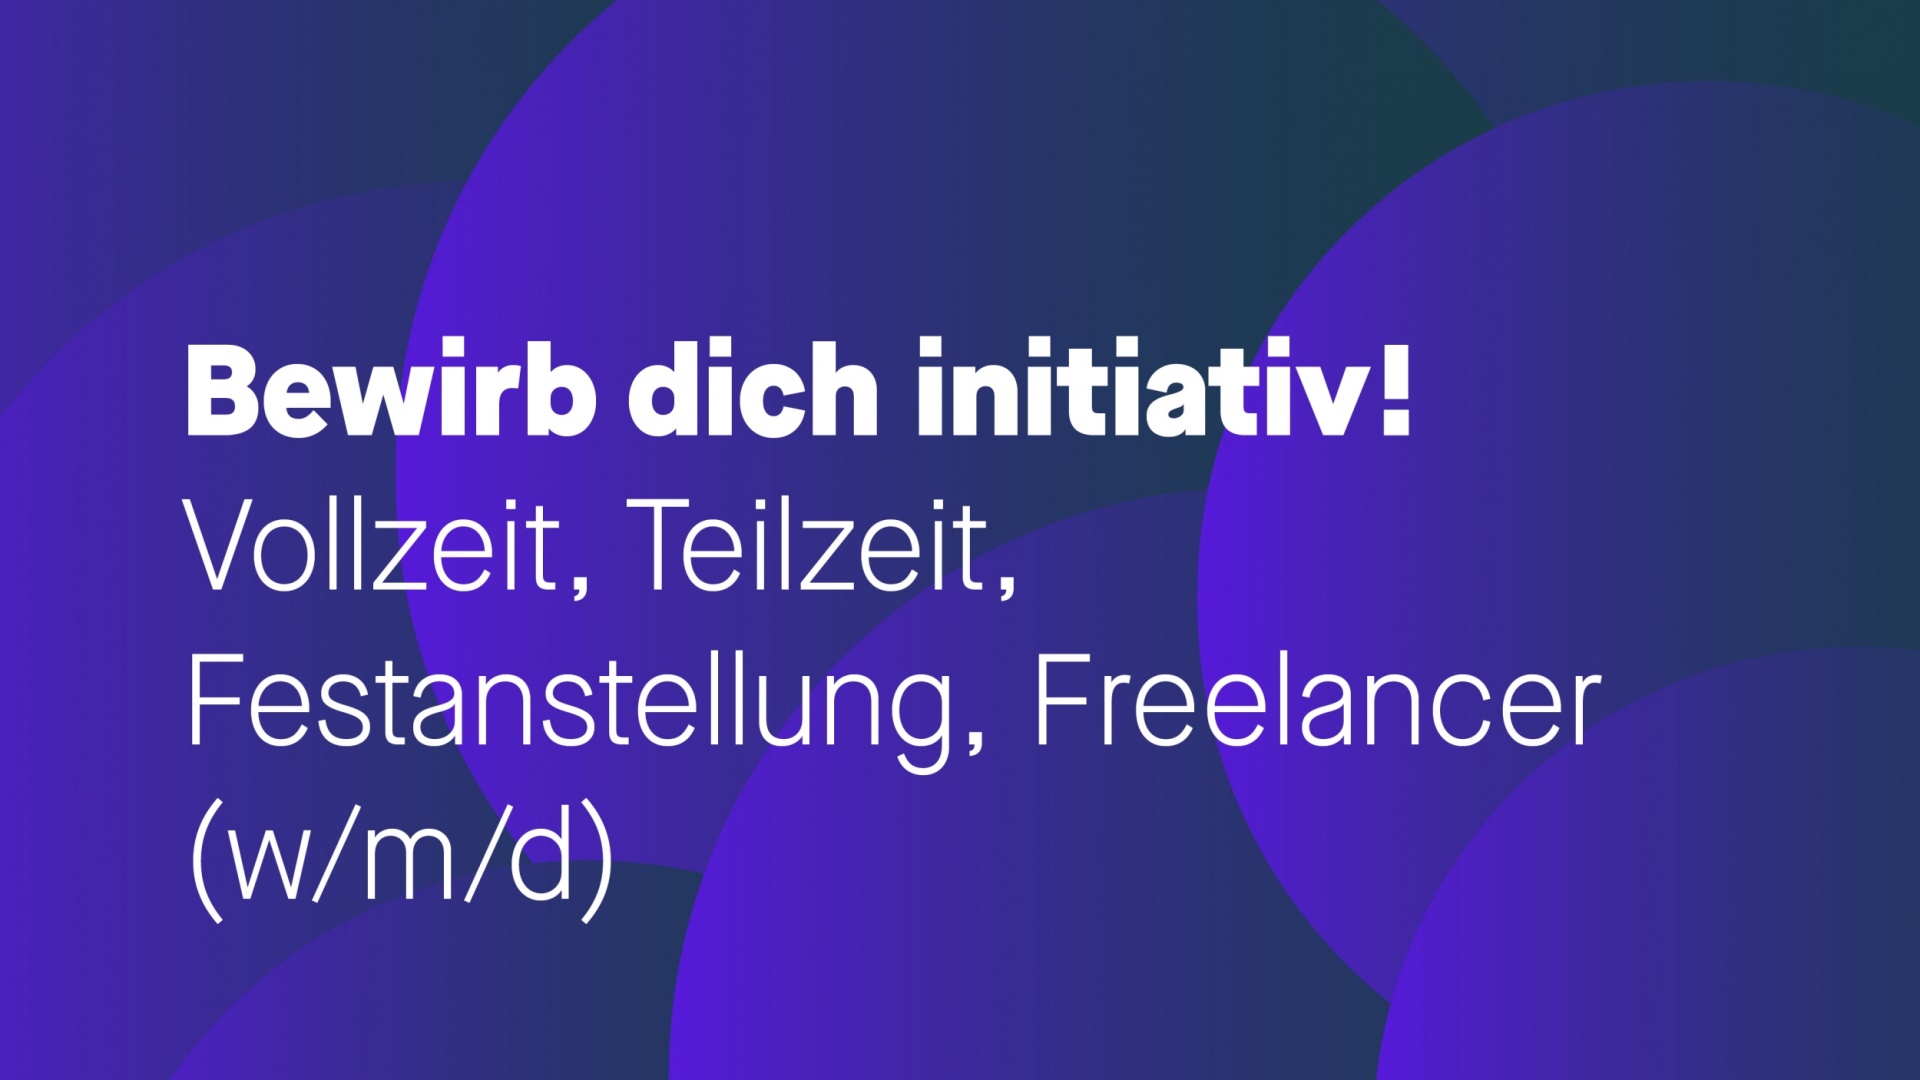 Initiativbewerbung Voll- und Teilzeit, Festanstellung und Freelancer (w/m/d)